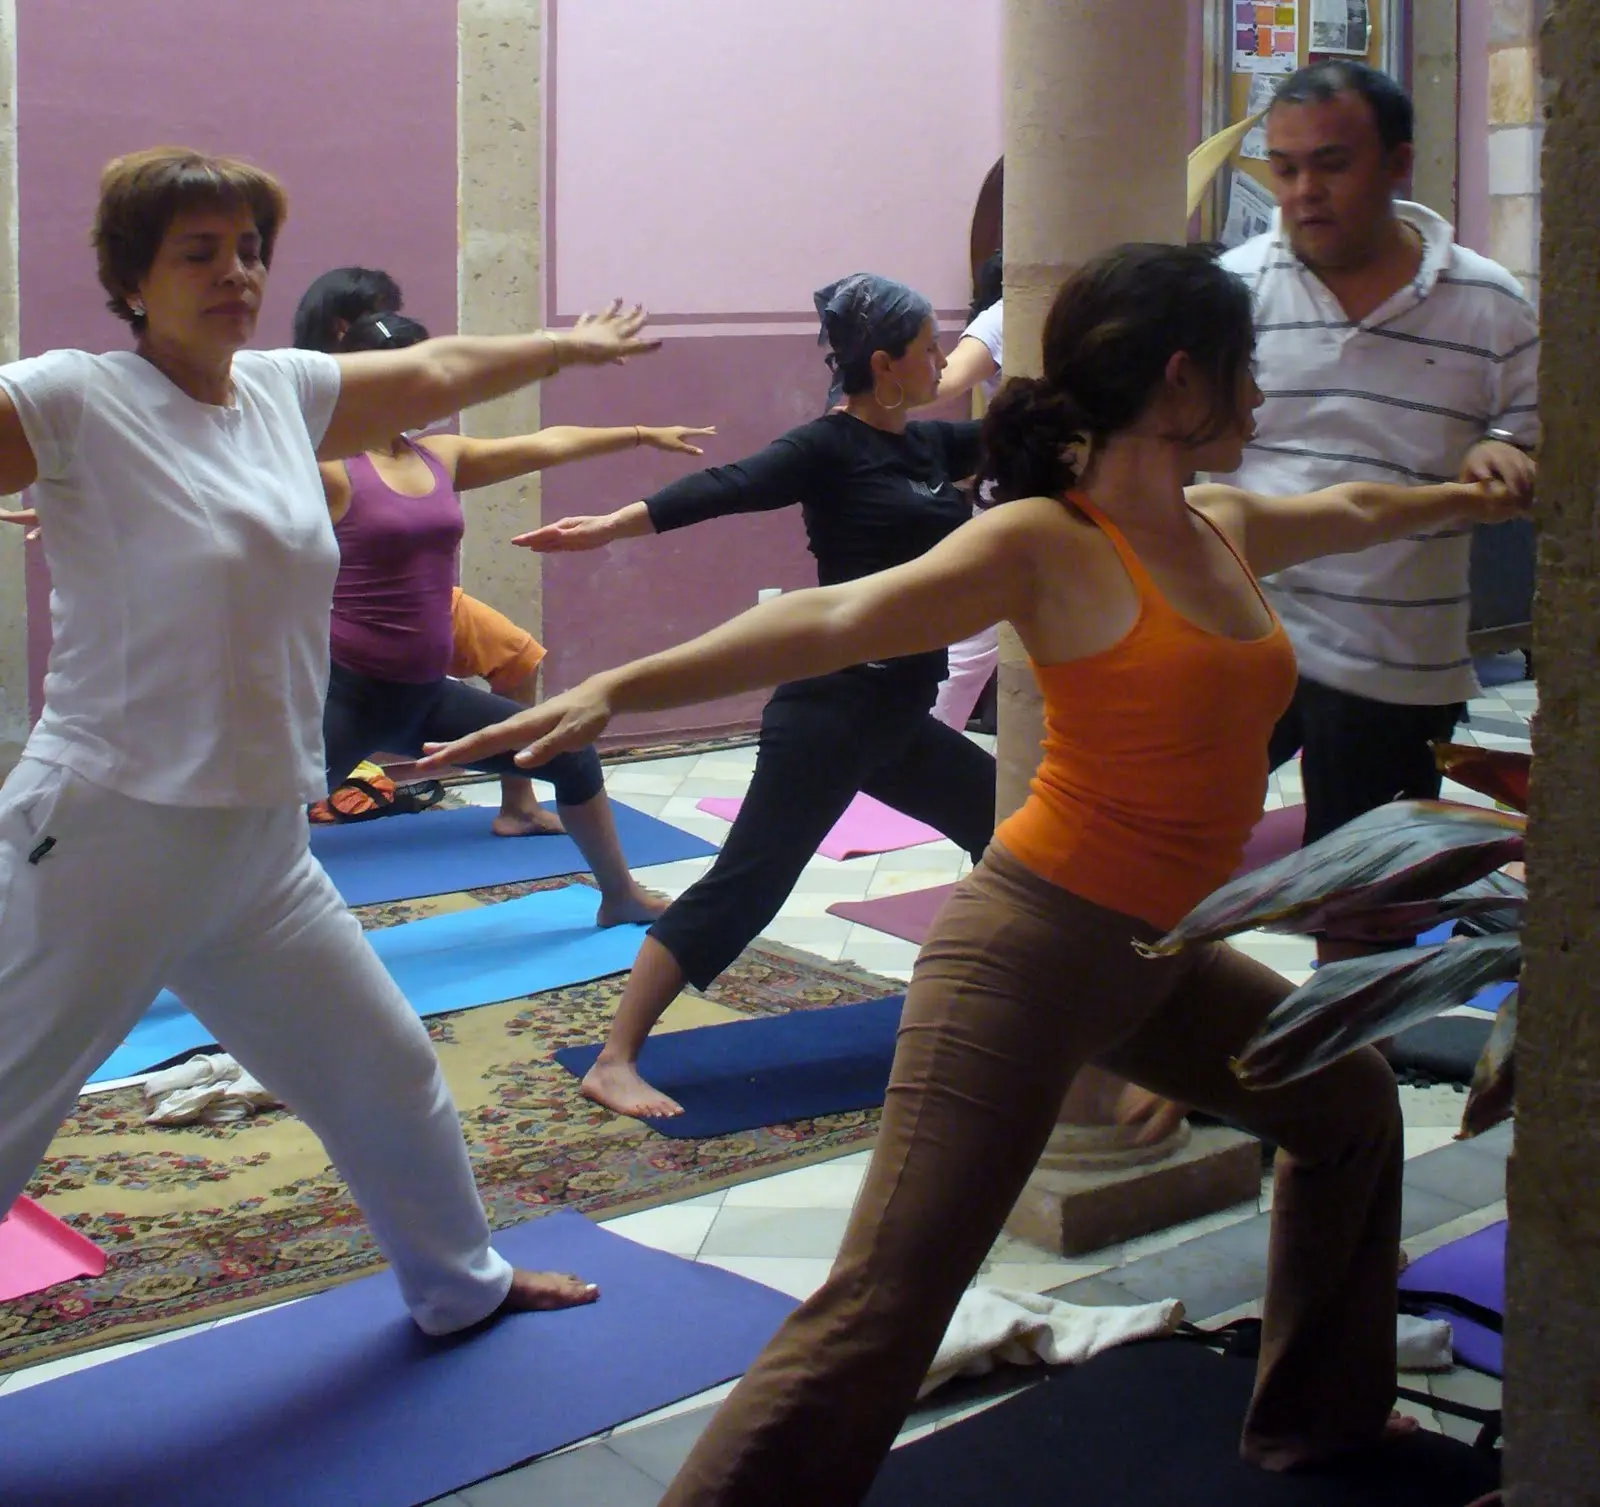 asana es firmeza corporal perfecta estabilidad de inteligencia - Qué quiere decir Asana en yoga